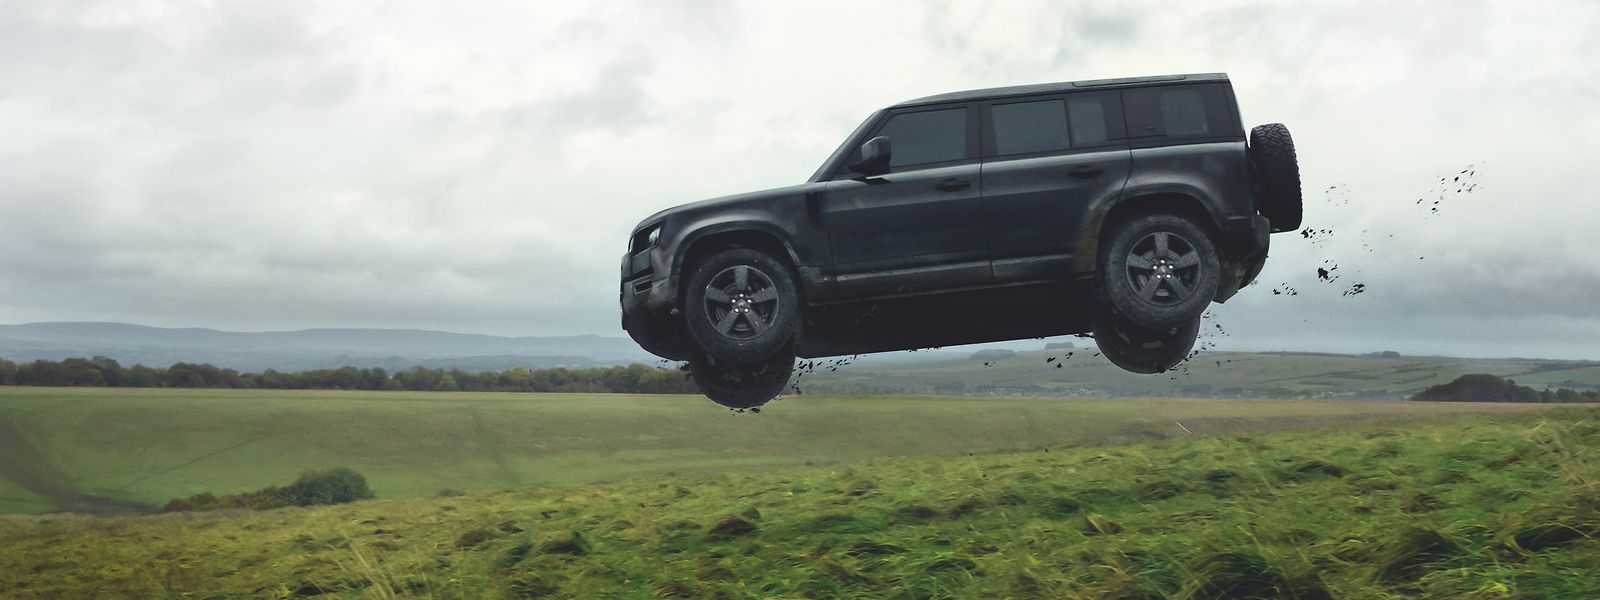 Das Auktionshaus Christie's versteigert einen Land Rover Defender 110, der im Film „No Time to Die“ („Keine Zeit zu sterben“) in Stuntszenen zu sehen war. 